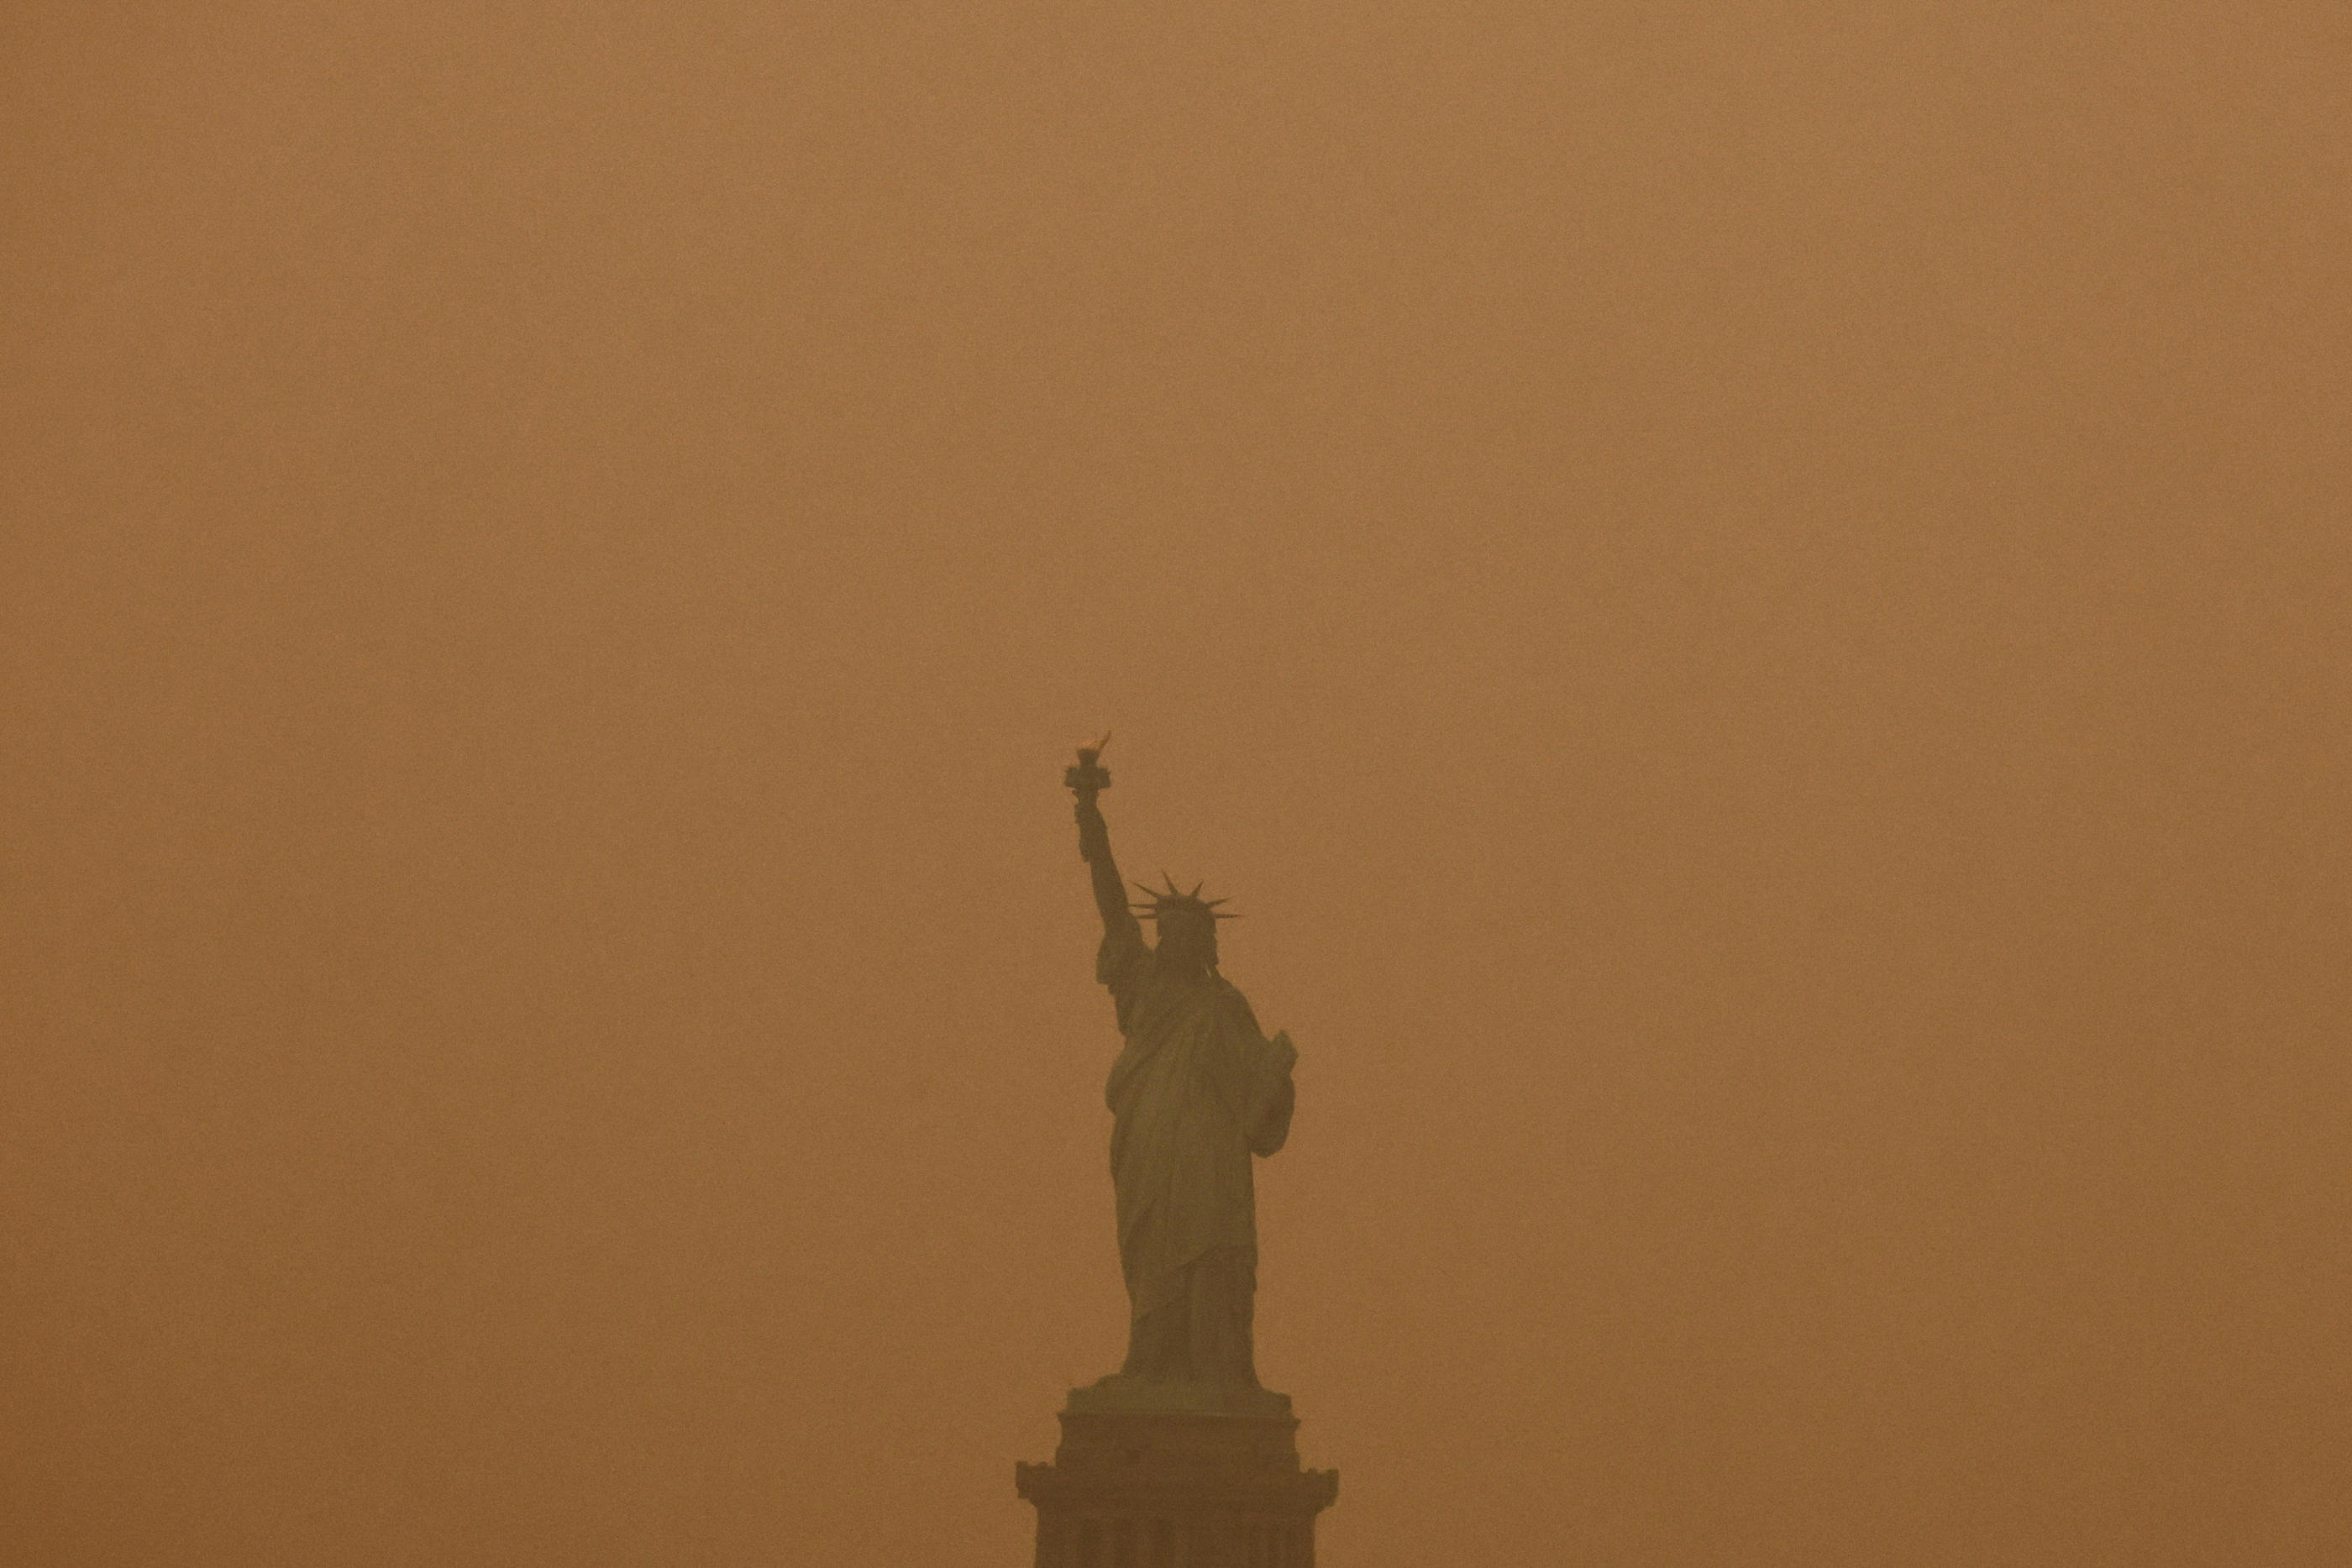 La Statue de la Liberté, comme tout New York, est recouverte d'une brume orangée provoquée par les feux de forêt au Canada. REUTERS/Amr Alfiky